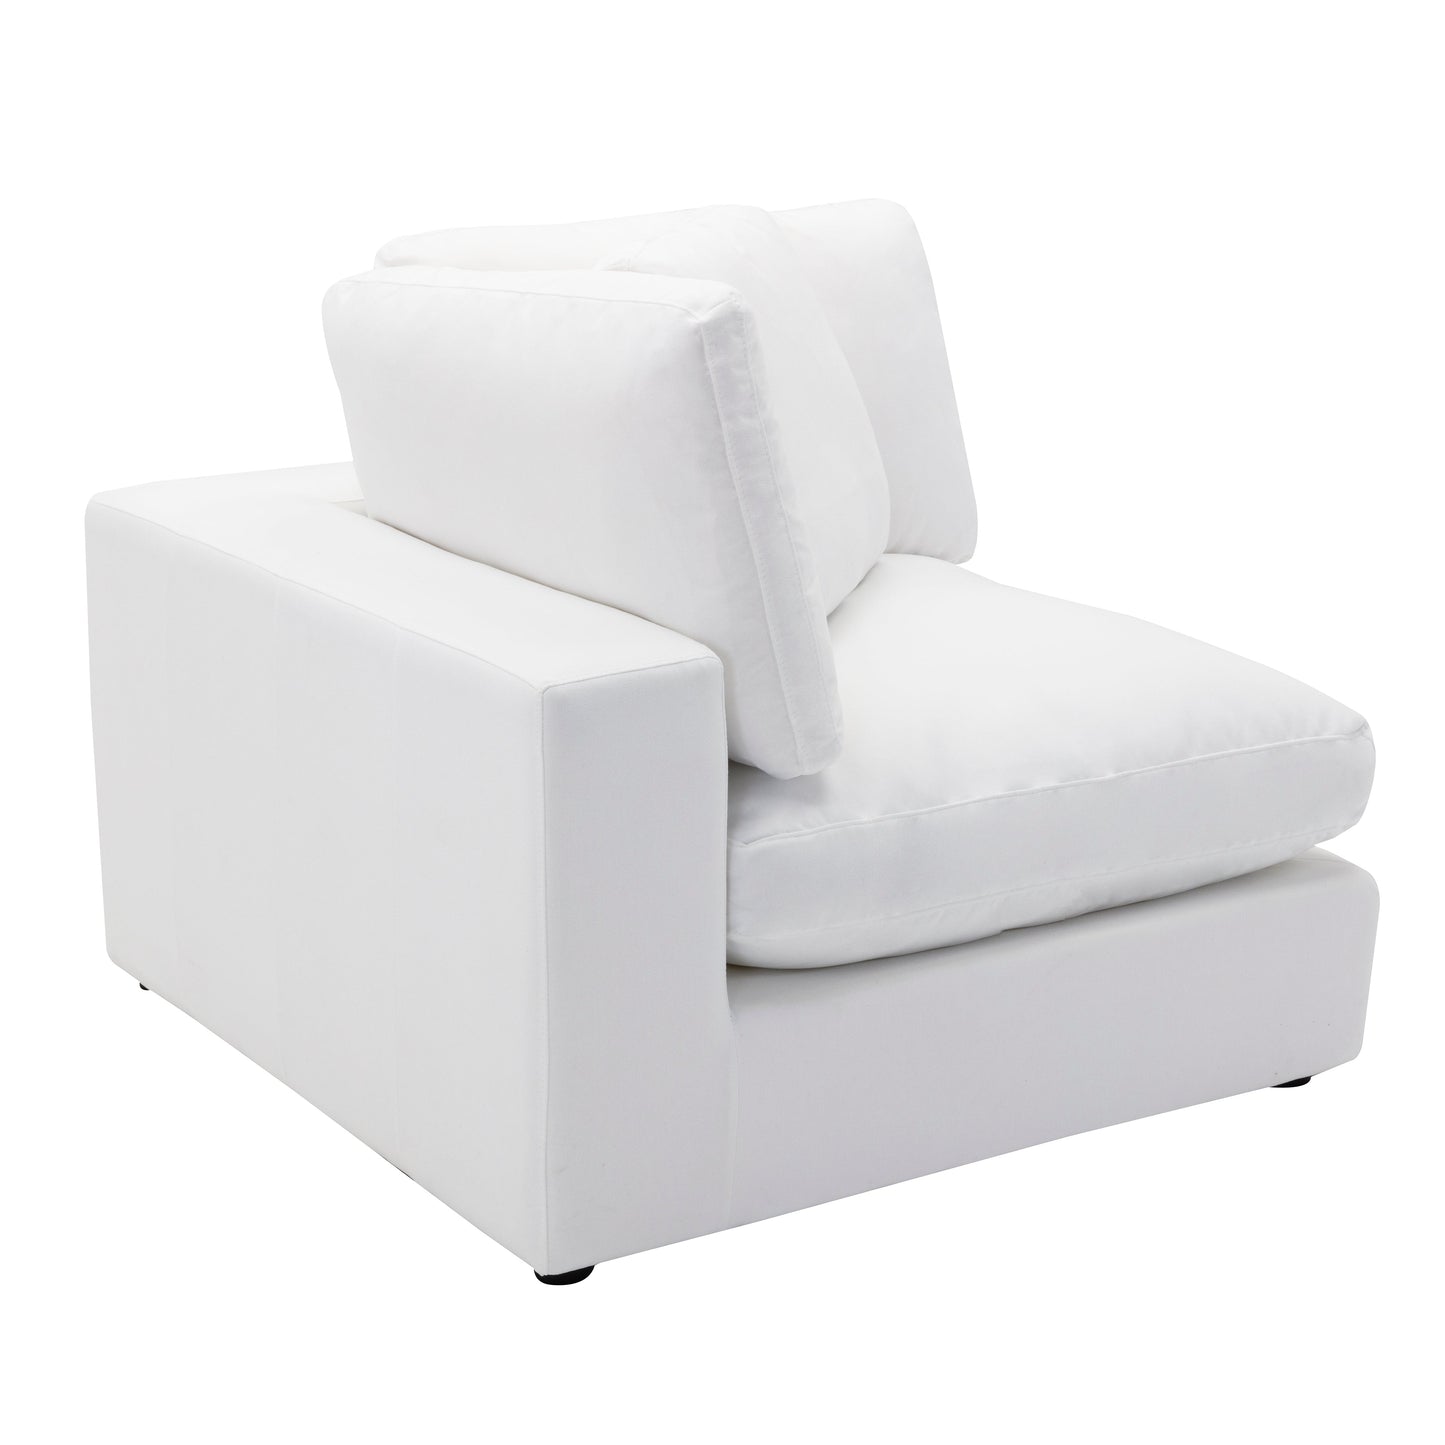 Rivas Contemporary Feather Fill 5-Piece Modular Sectional Sofa, White